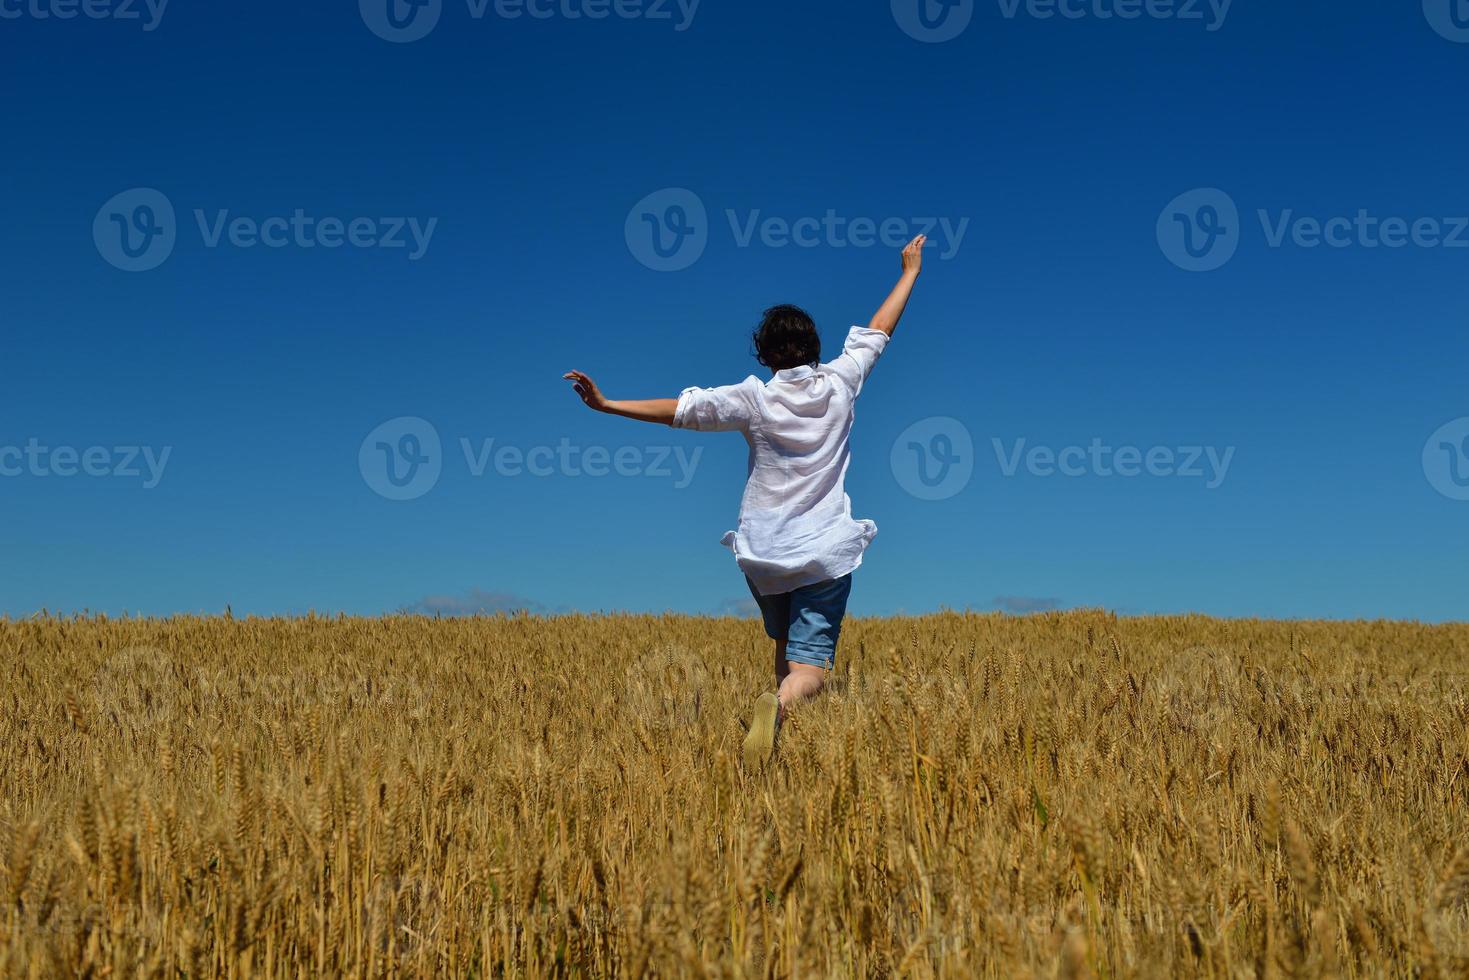 jonge vrouw in tarweveld in de zomer foto